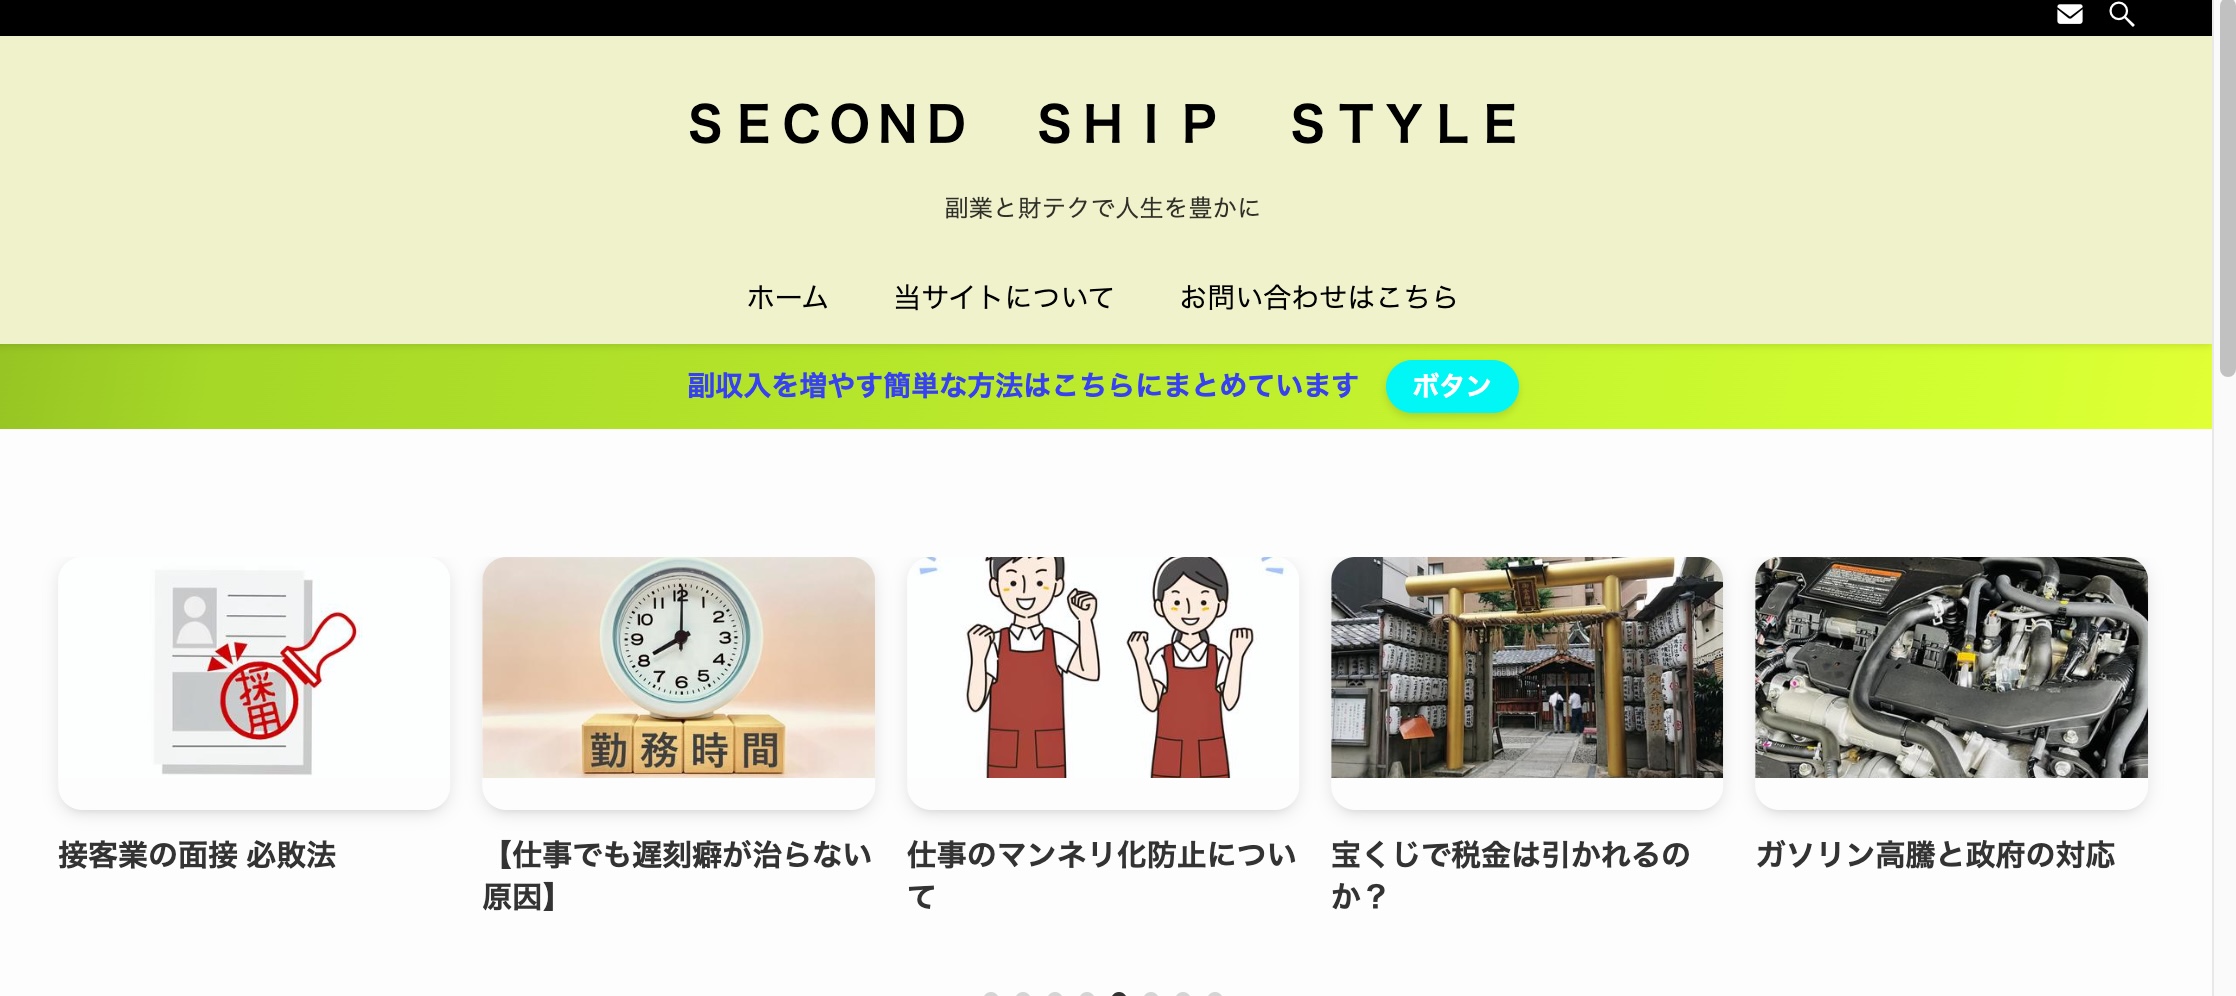 SECOND SHIP STYLE「副業と財テクで人生を豊かに」への称賛